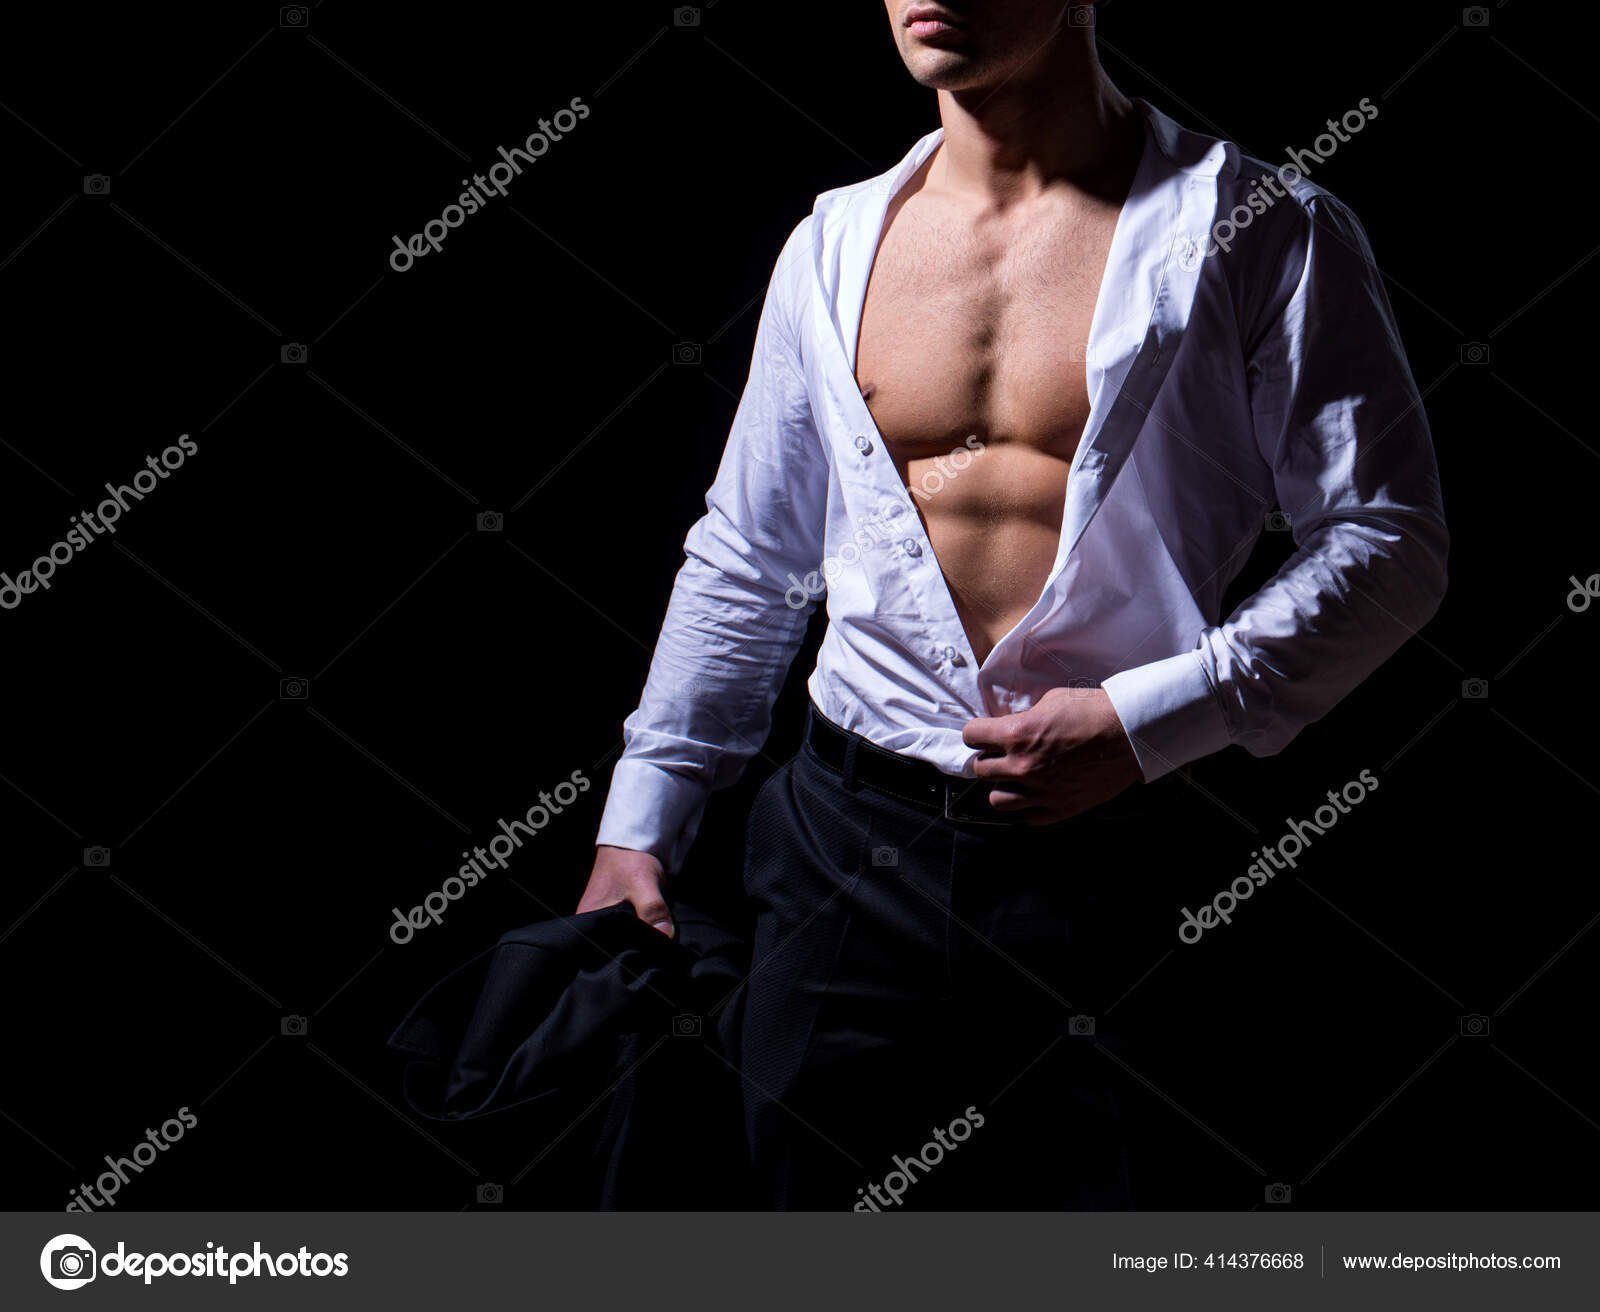 Male body undress